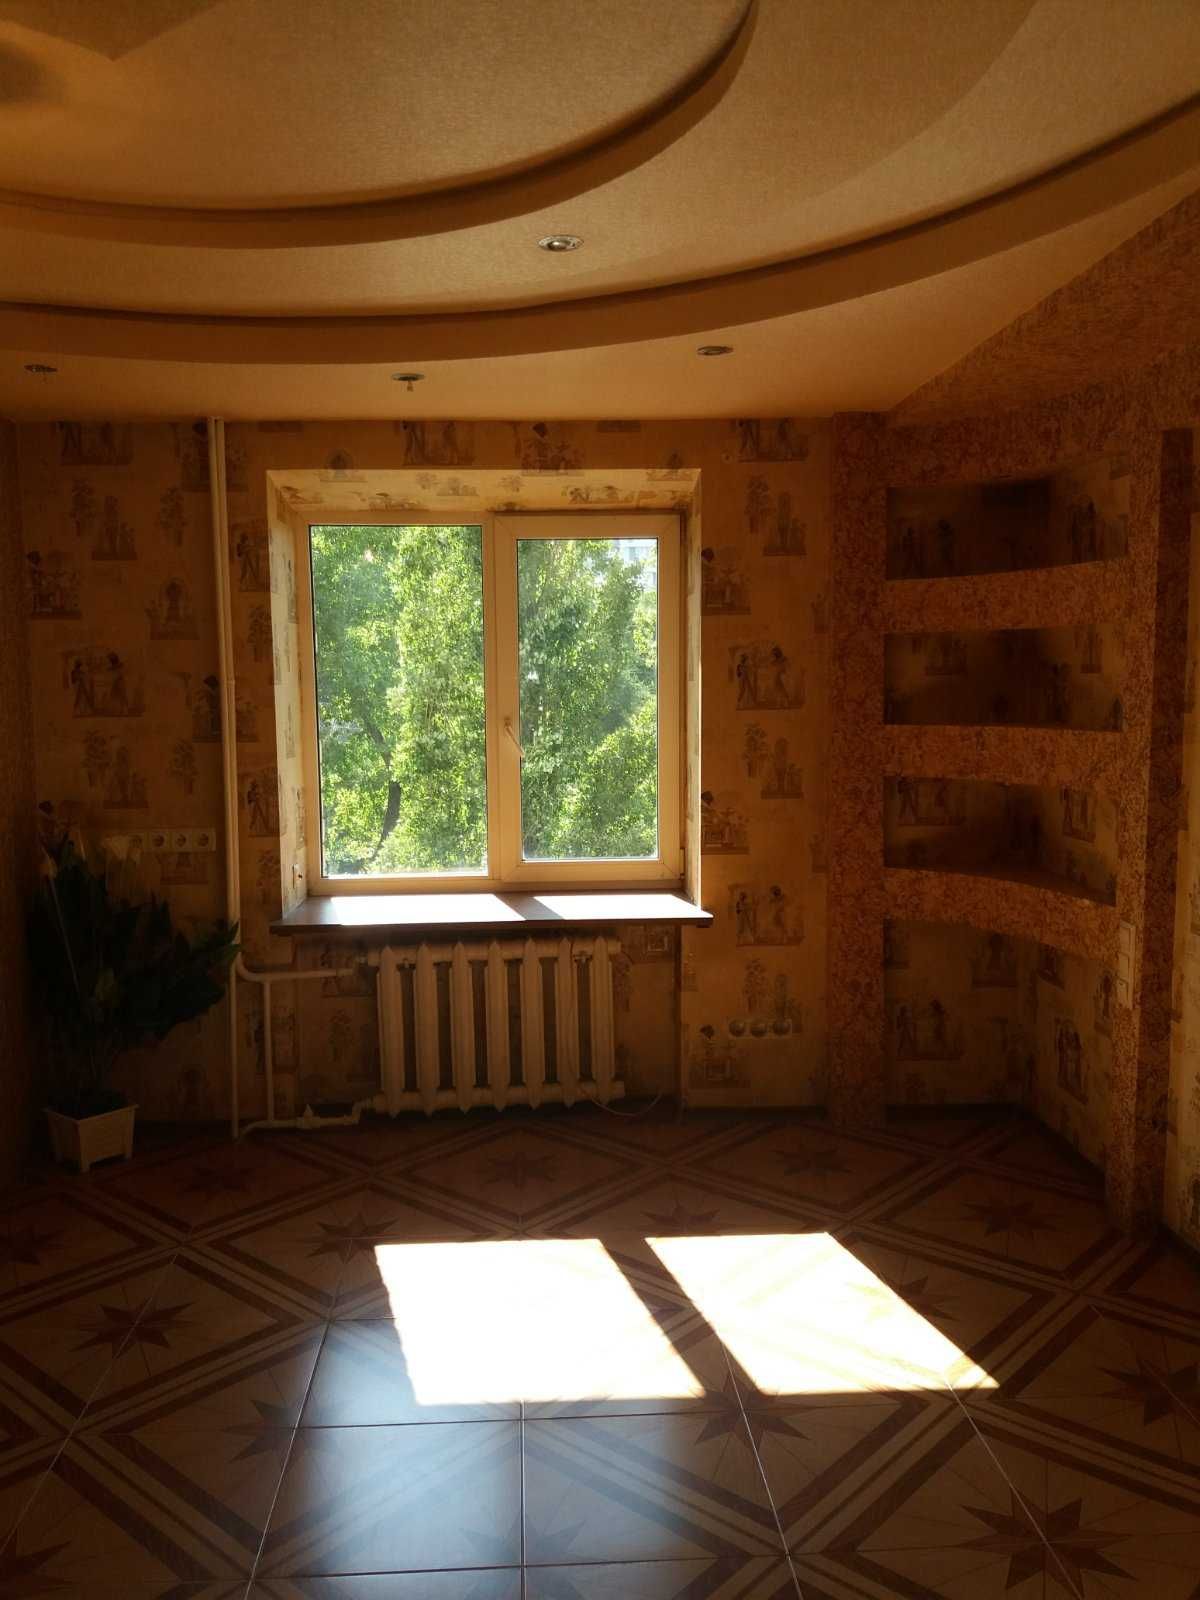 Срочно продам нестандартную 3-х комнатную квартиру в Приднепровске.